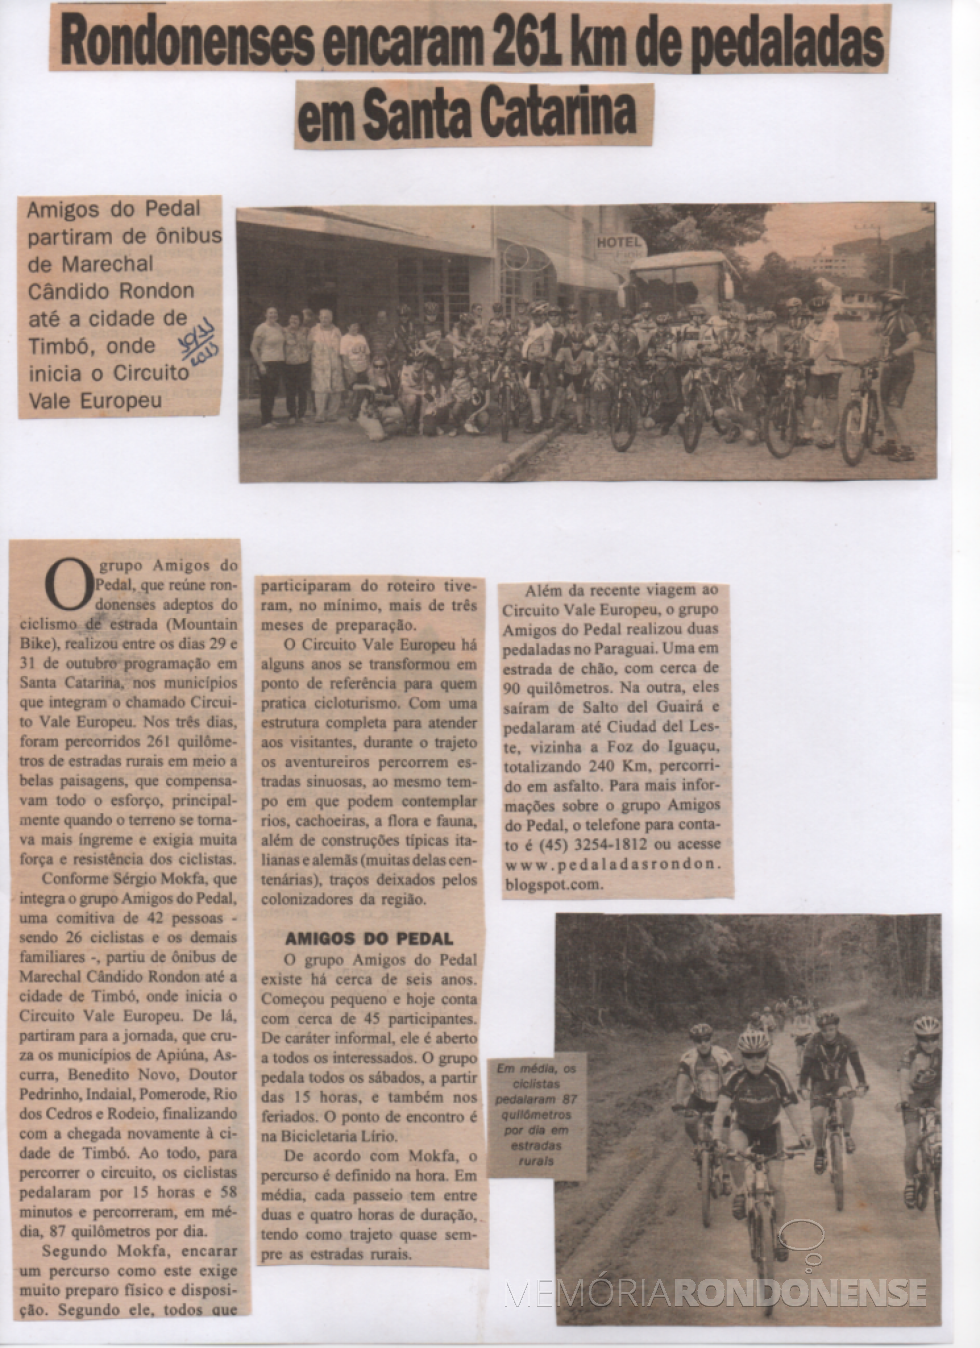 || Recorte jornalístico sobre a participação de cilcistas rondonenses no Circuito de Ciclismo Vale Europeu, em Santa Catarina, outubro de 2013.
Imagem: Acervo Paul Lirio Berwig - FOTO 13 - 